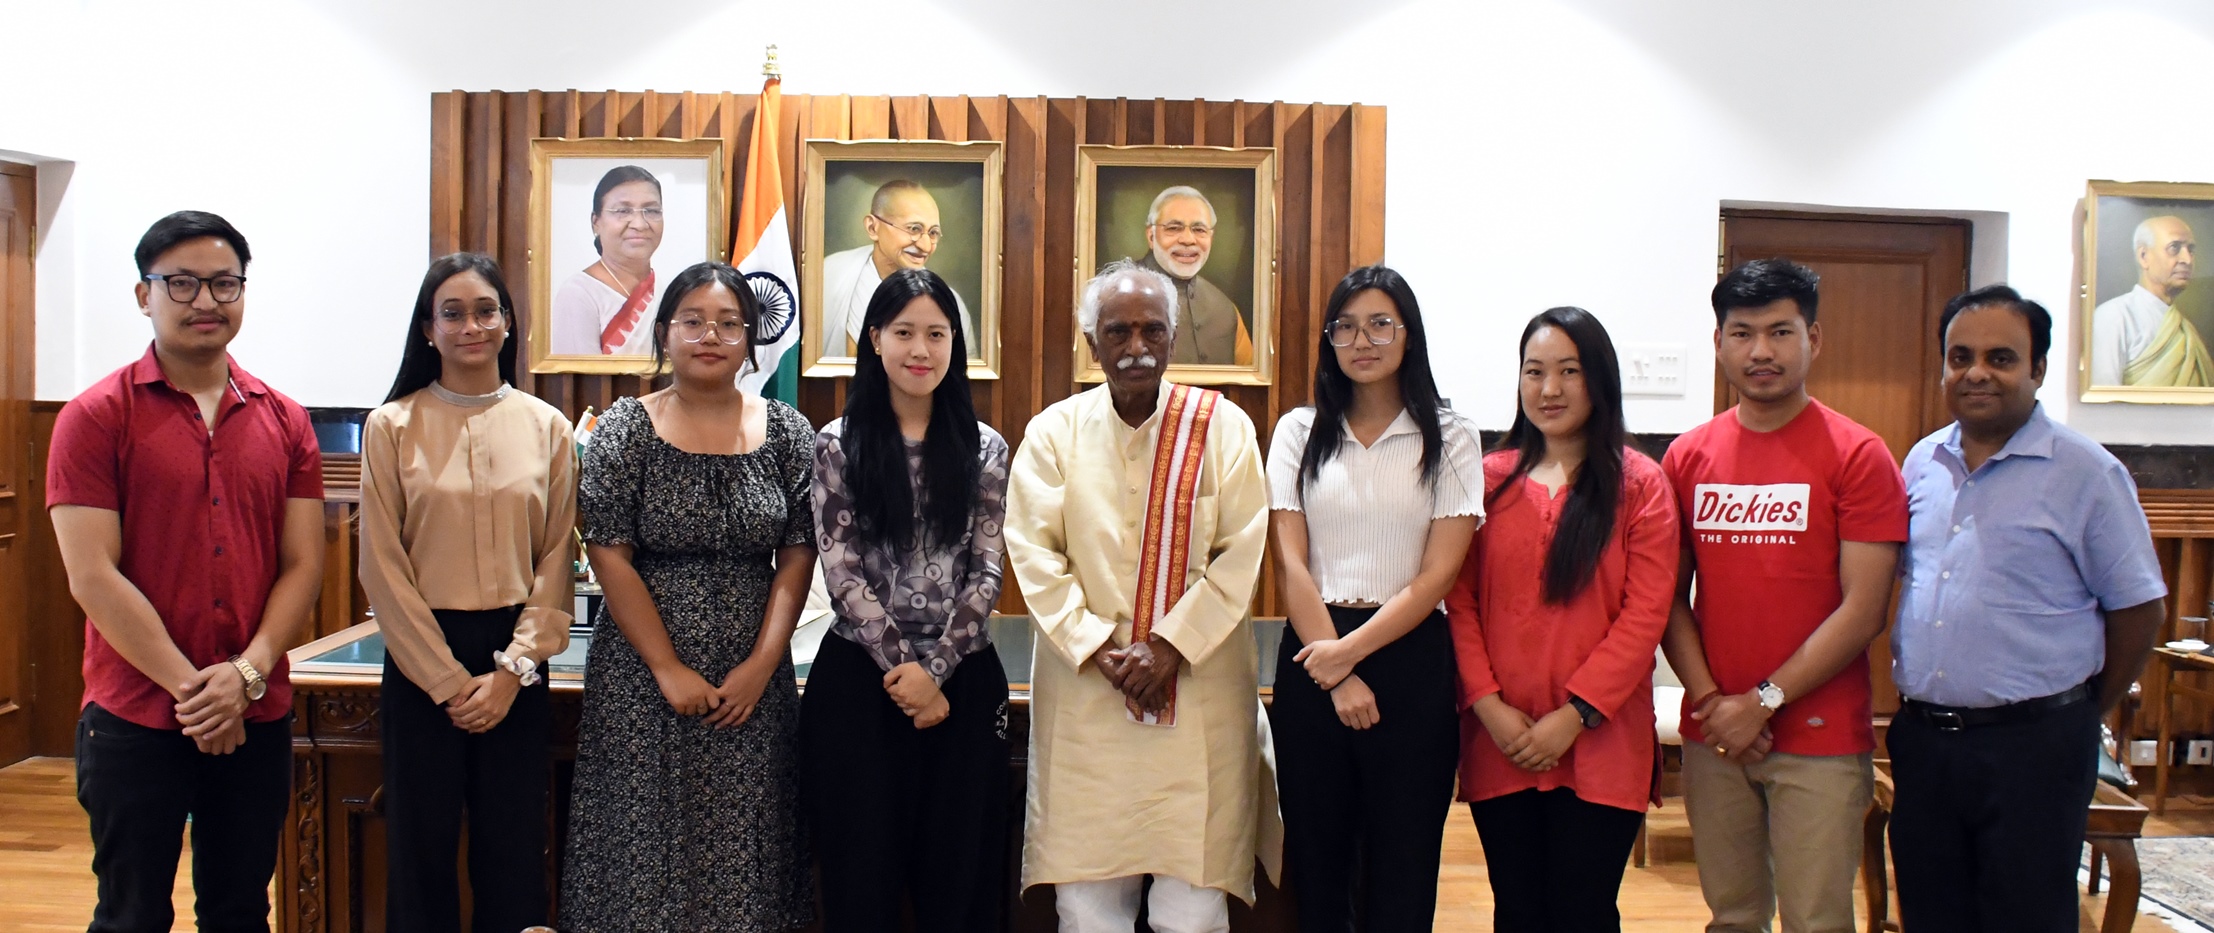 राज्यपाल श्री बंडारू दत्तात्रेय गत-सांयकाल राजभवन हरियाणा में 48वें सिक्किम स्थापना दिवस के अवसर पर छात्र-छात्राओं के प्रतिनिधिमंडल से मुलाकात करते हुए